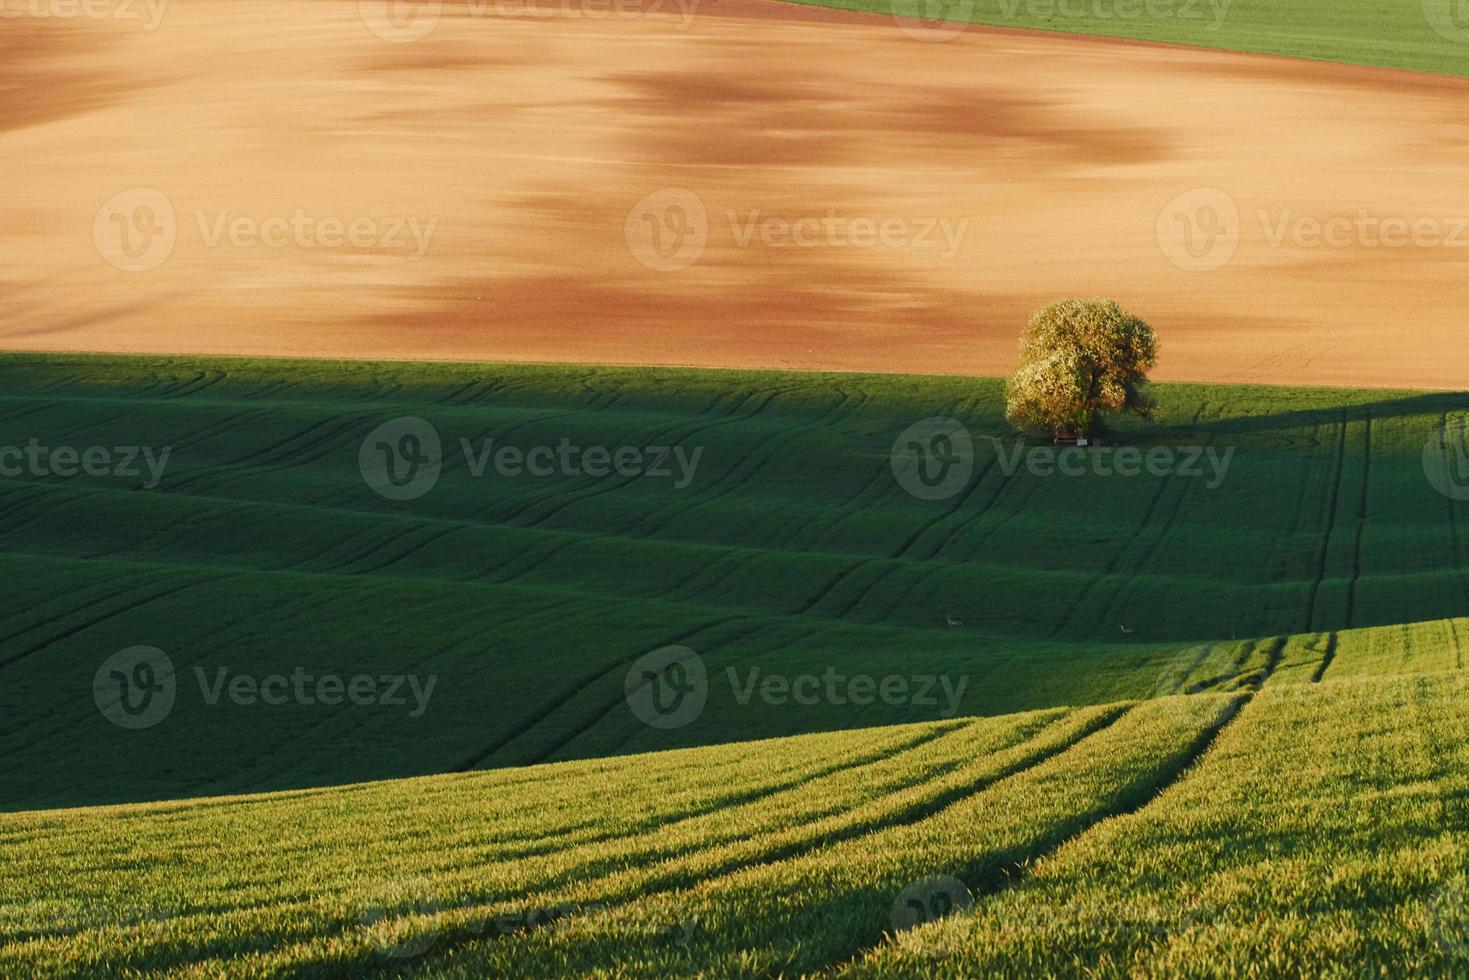 árbol en campo verde en moravia. Hermosa naturaleza. escena campestre foto